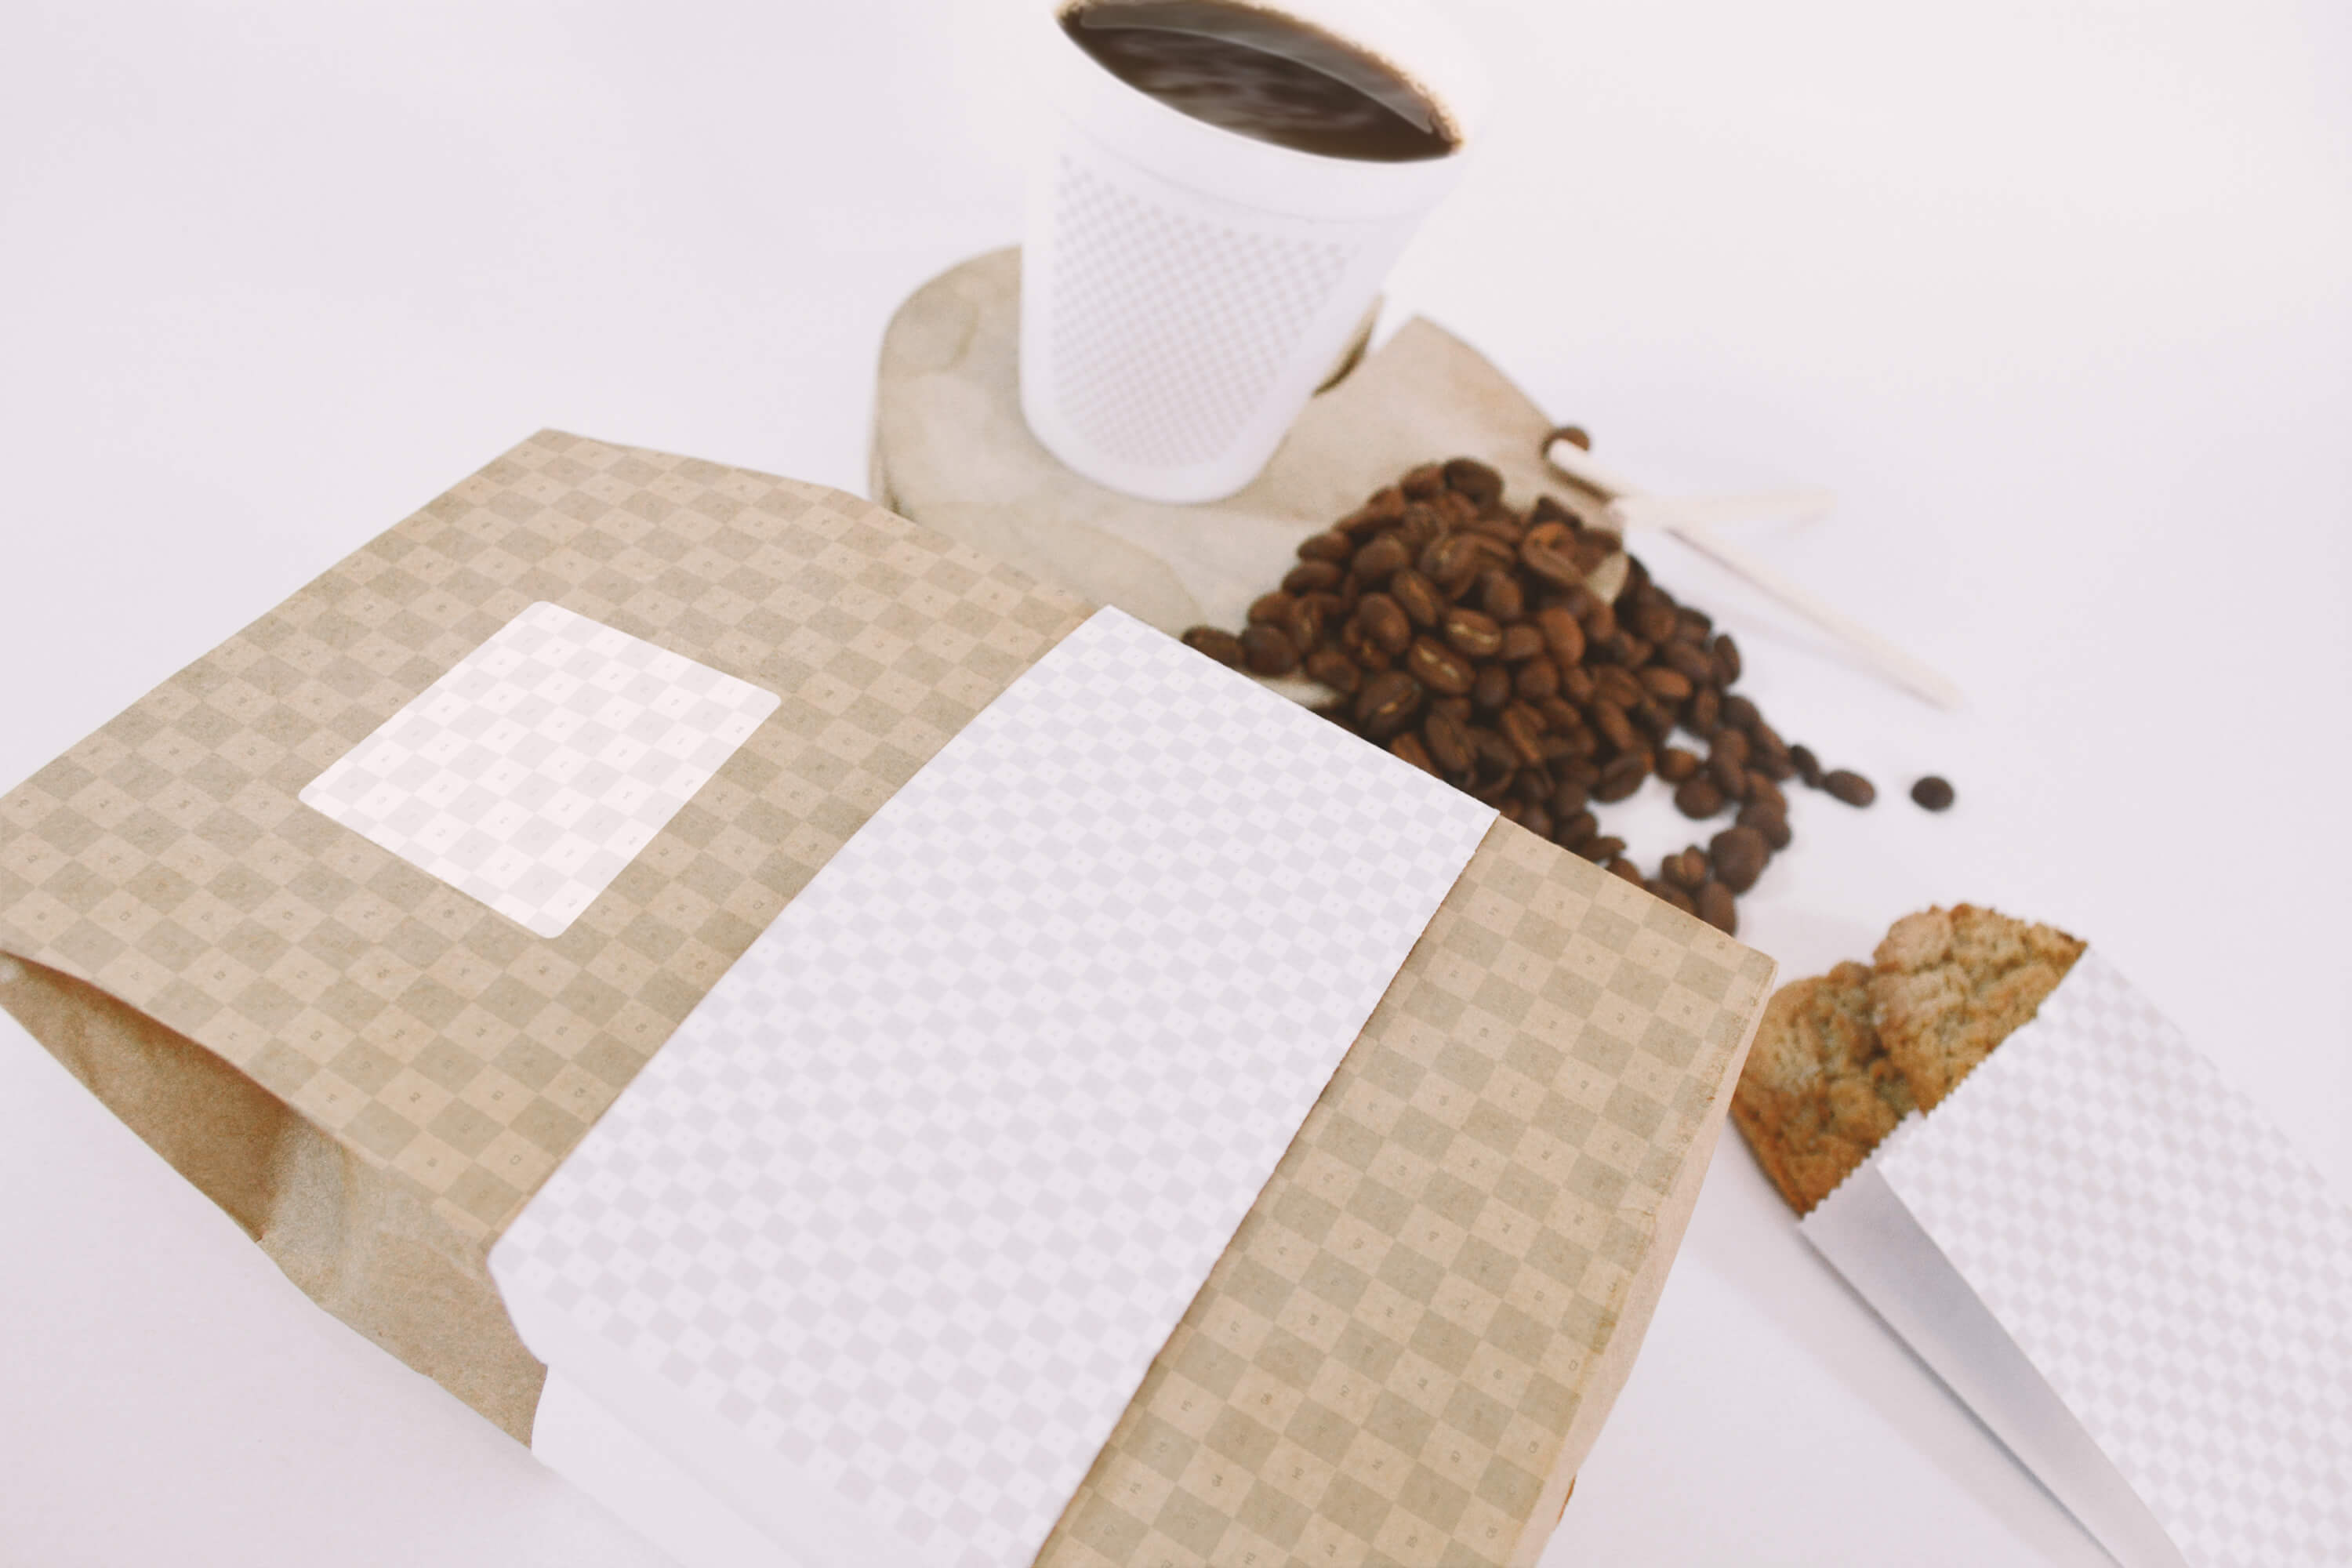 咖啡豆纸袋和咖啡纸杯包装设计透视俯视图样机 Coffee Bag and Cup Mockup Perspective Top View插图(1)